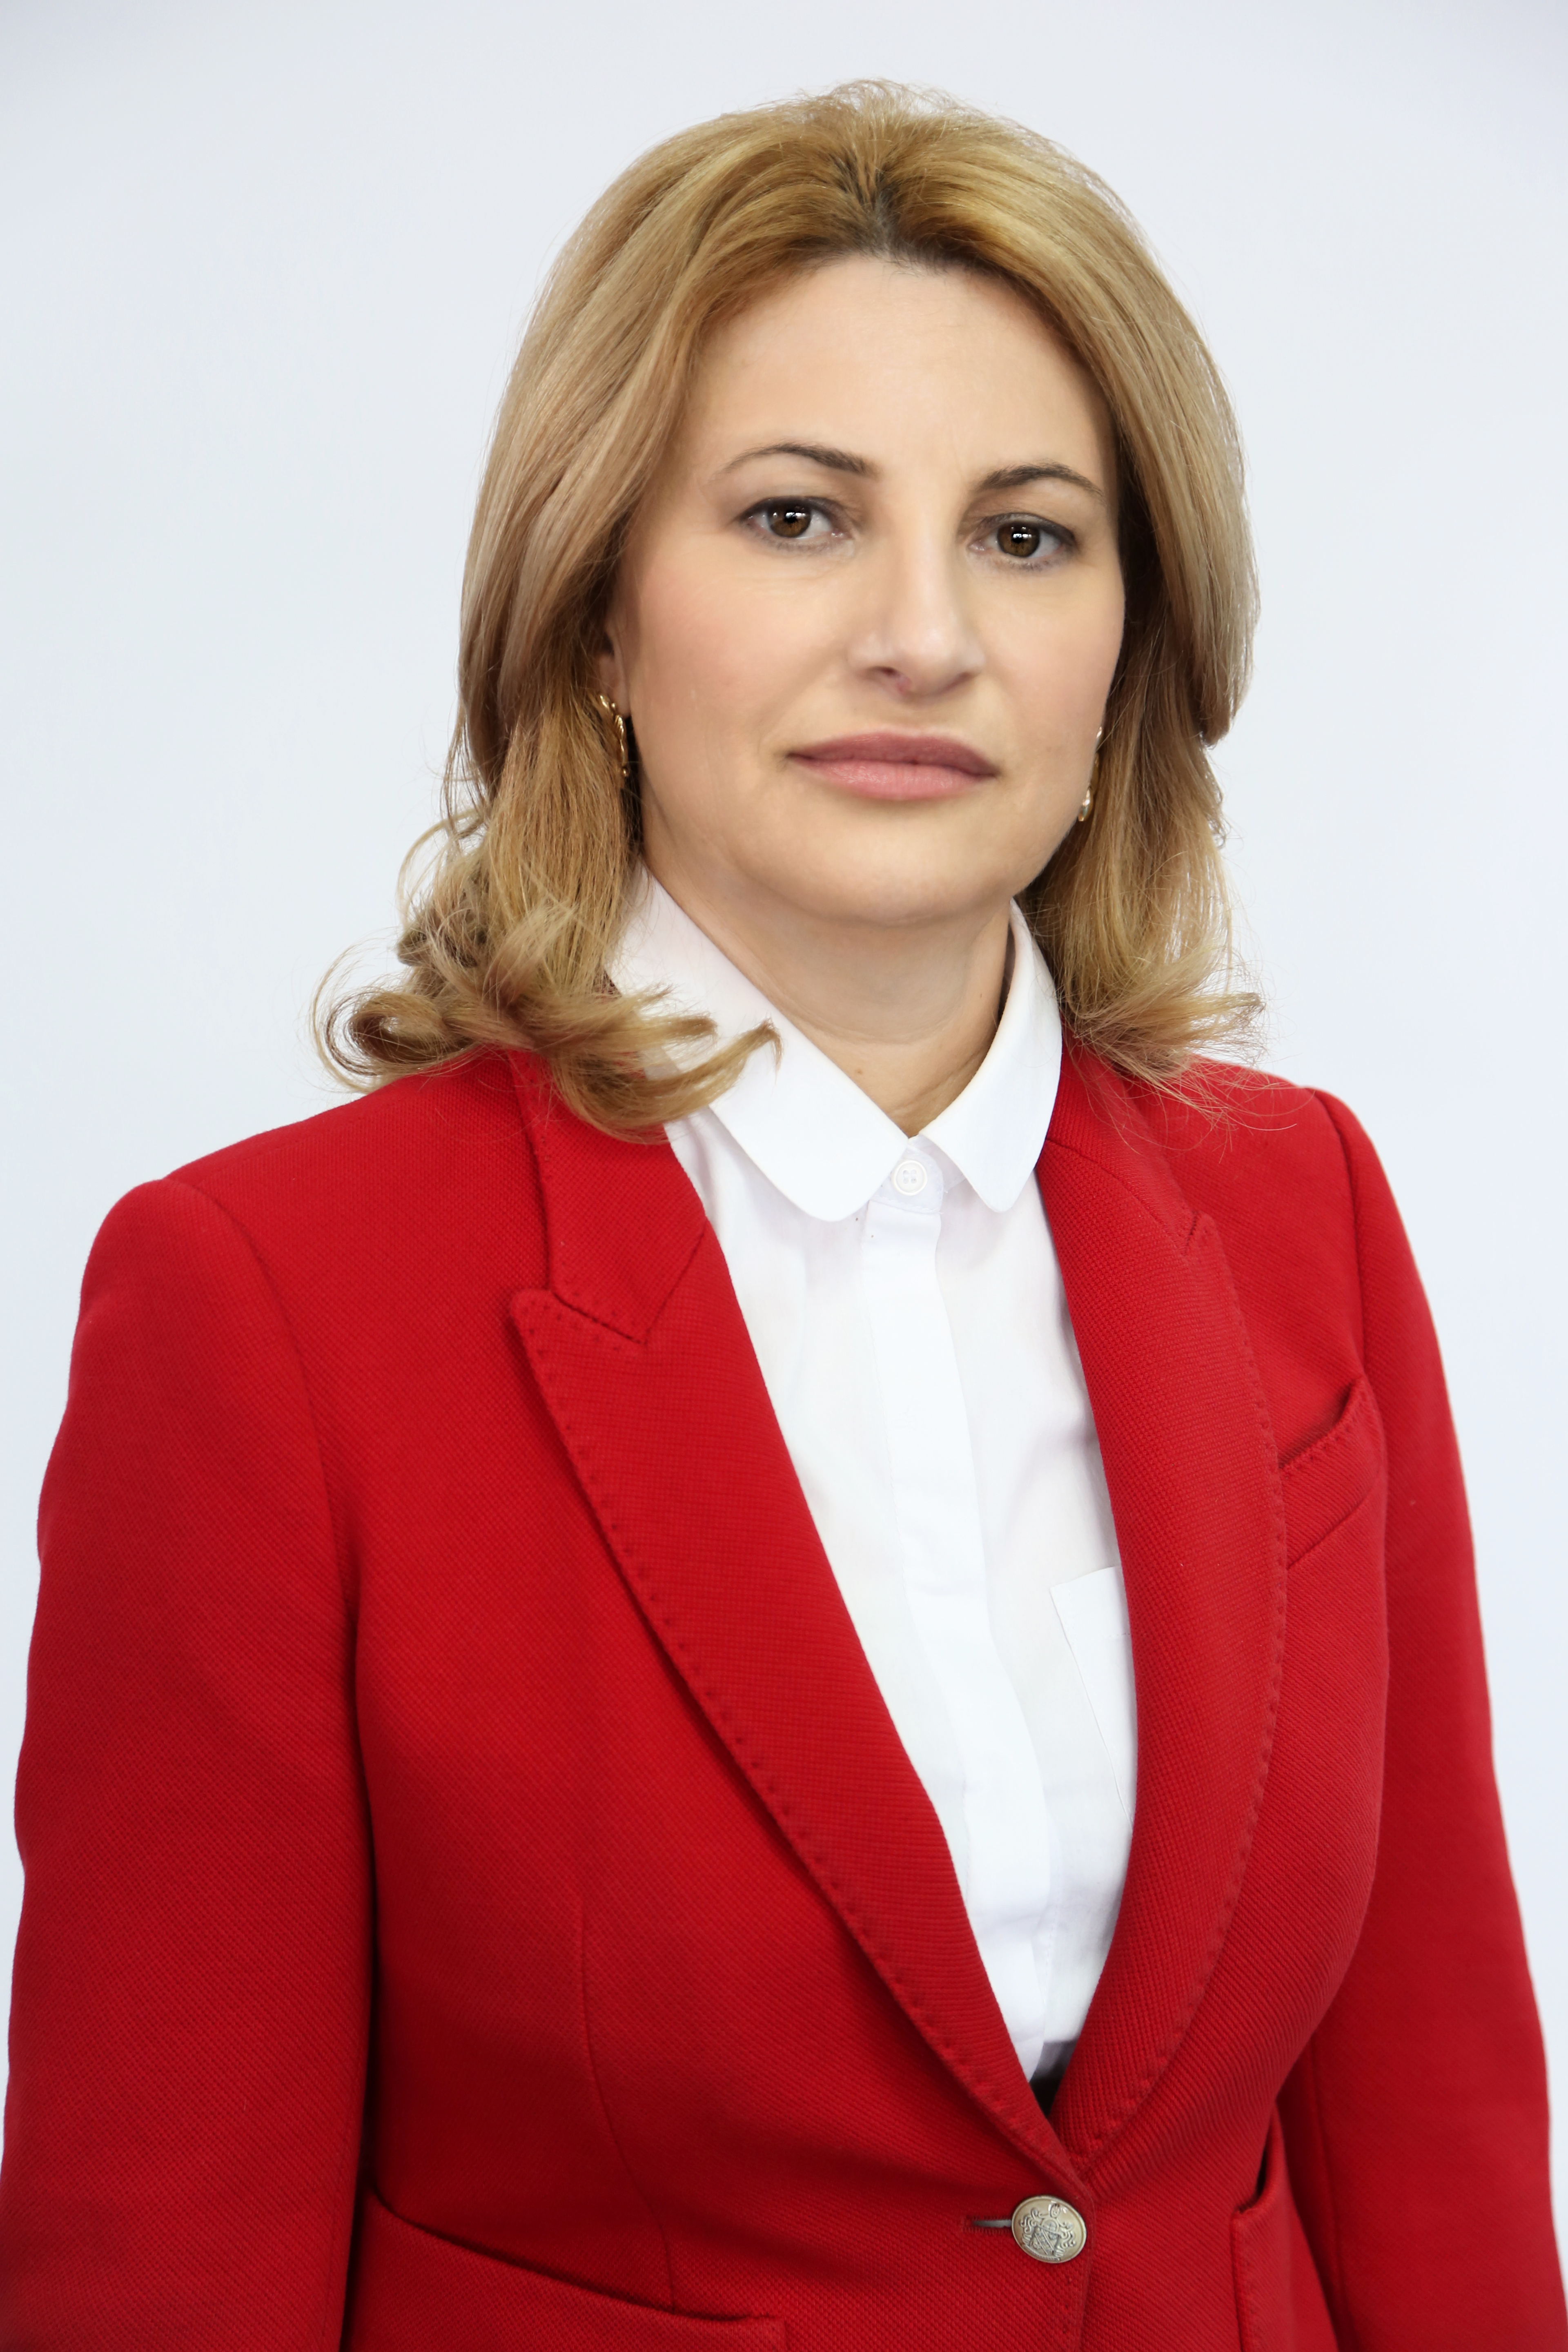 DEPUTATUL ANIȘOARA RADU, MOMENT DE BILANȚ DUPĂ SESIUNEA PARLAMENTARĂ IANUARIE-IUNIE 2018